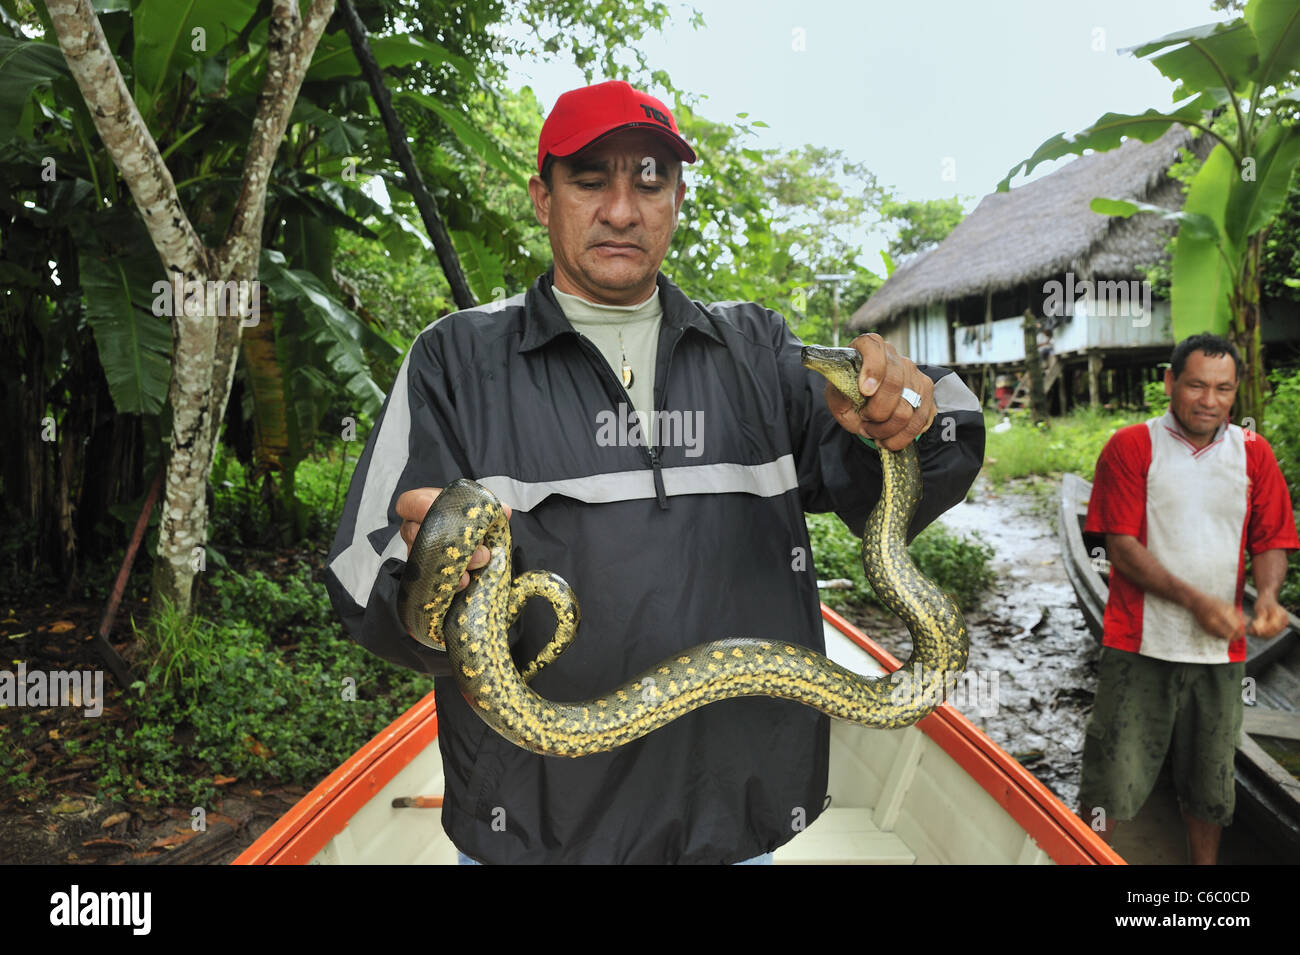 Guía turística celebración capturaron a Snake, Río Amazonas, Perú Foto de stock